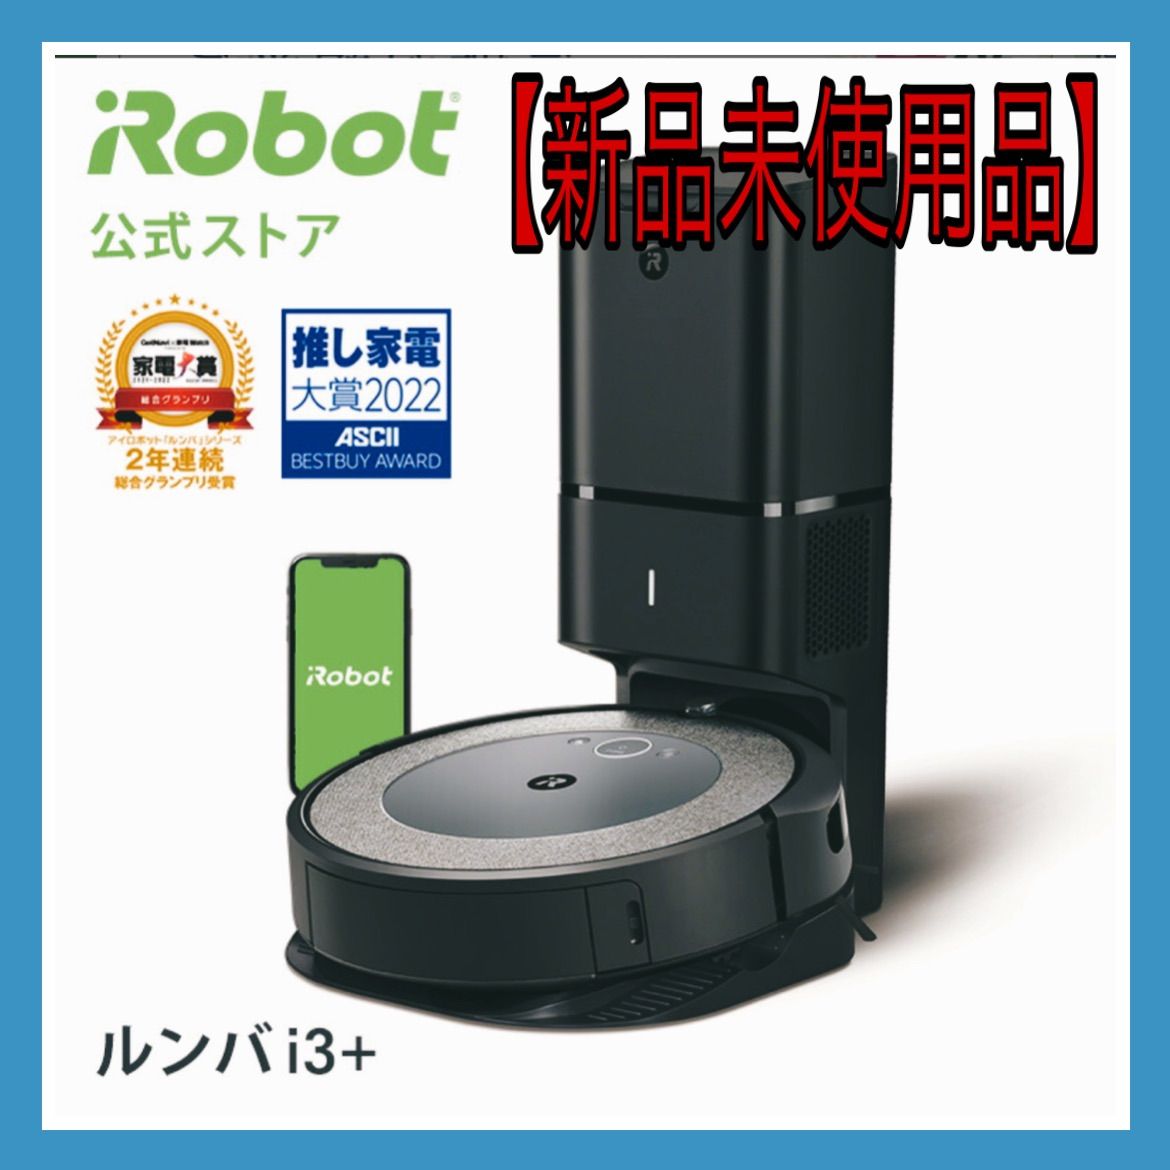 新品未使用品】ルンバ i3+ アイロボット ロボット掃除機 - メルカリ